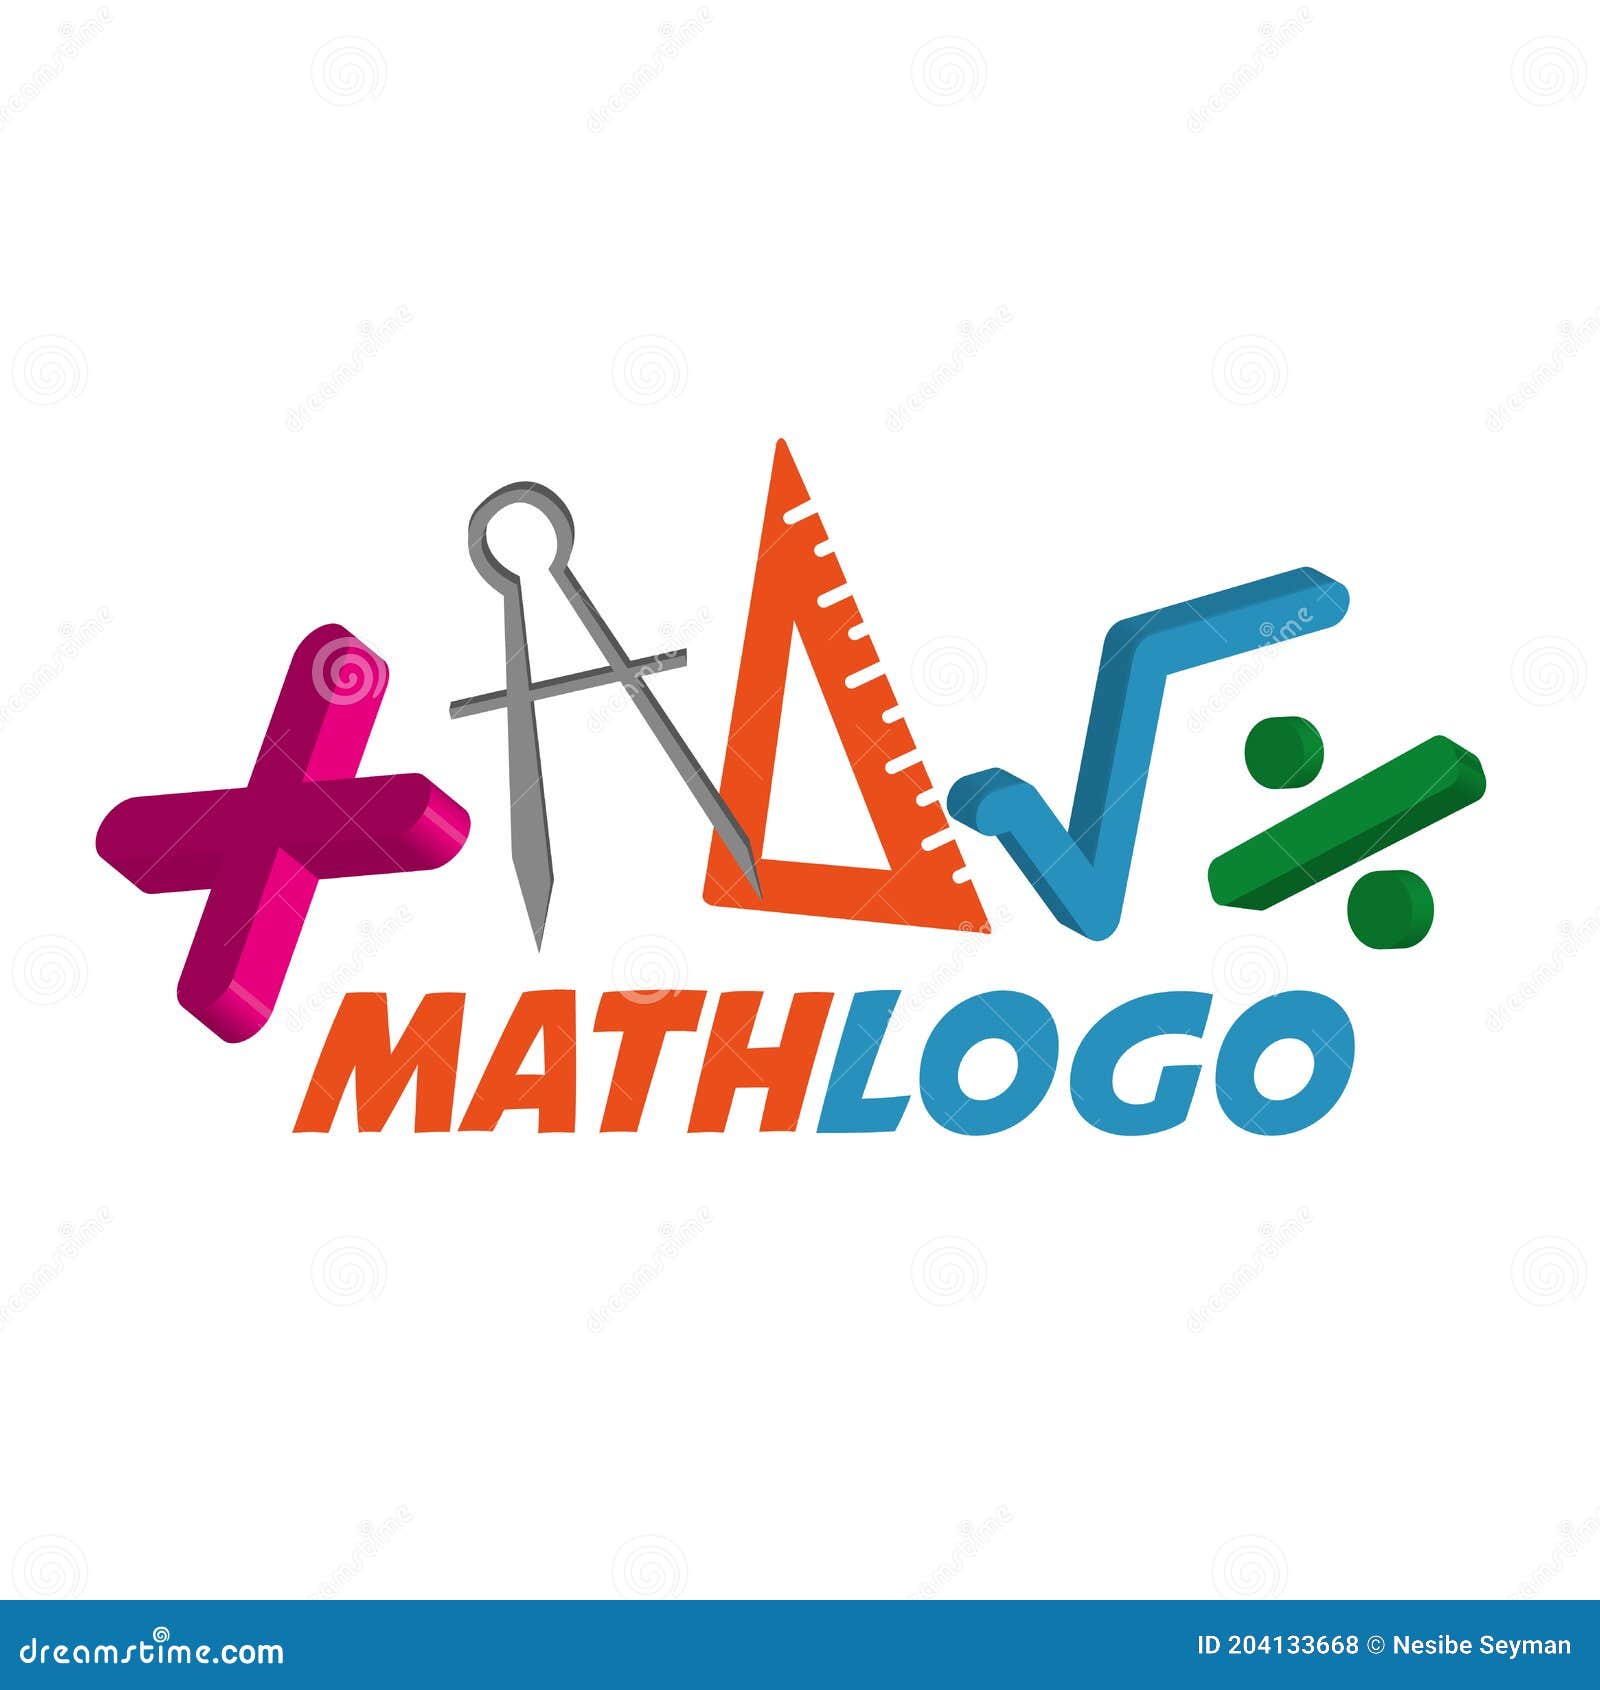 math logo ideas 2